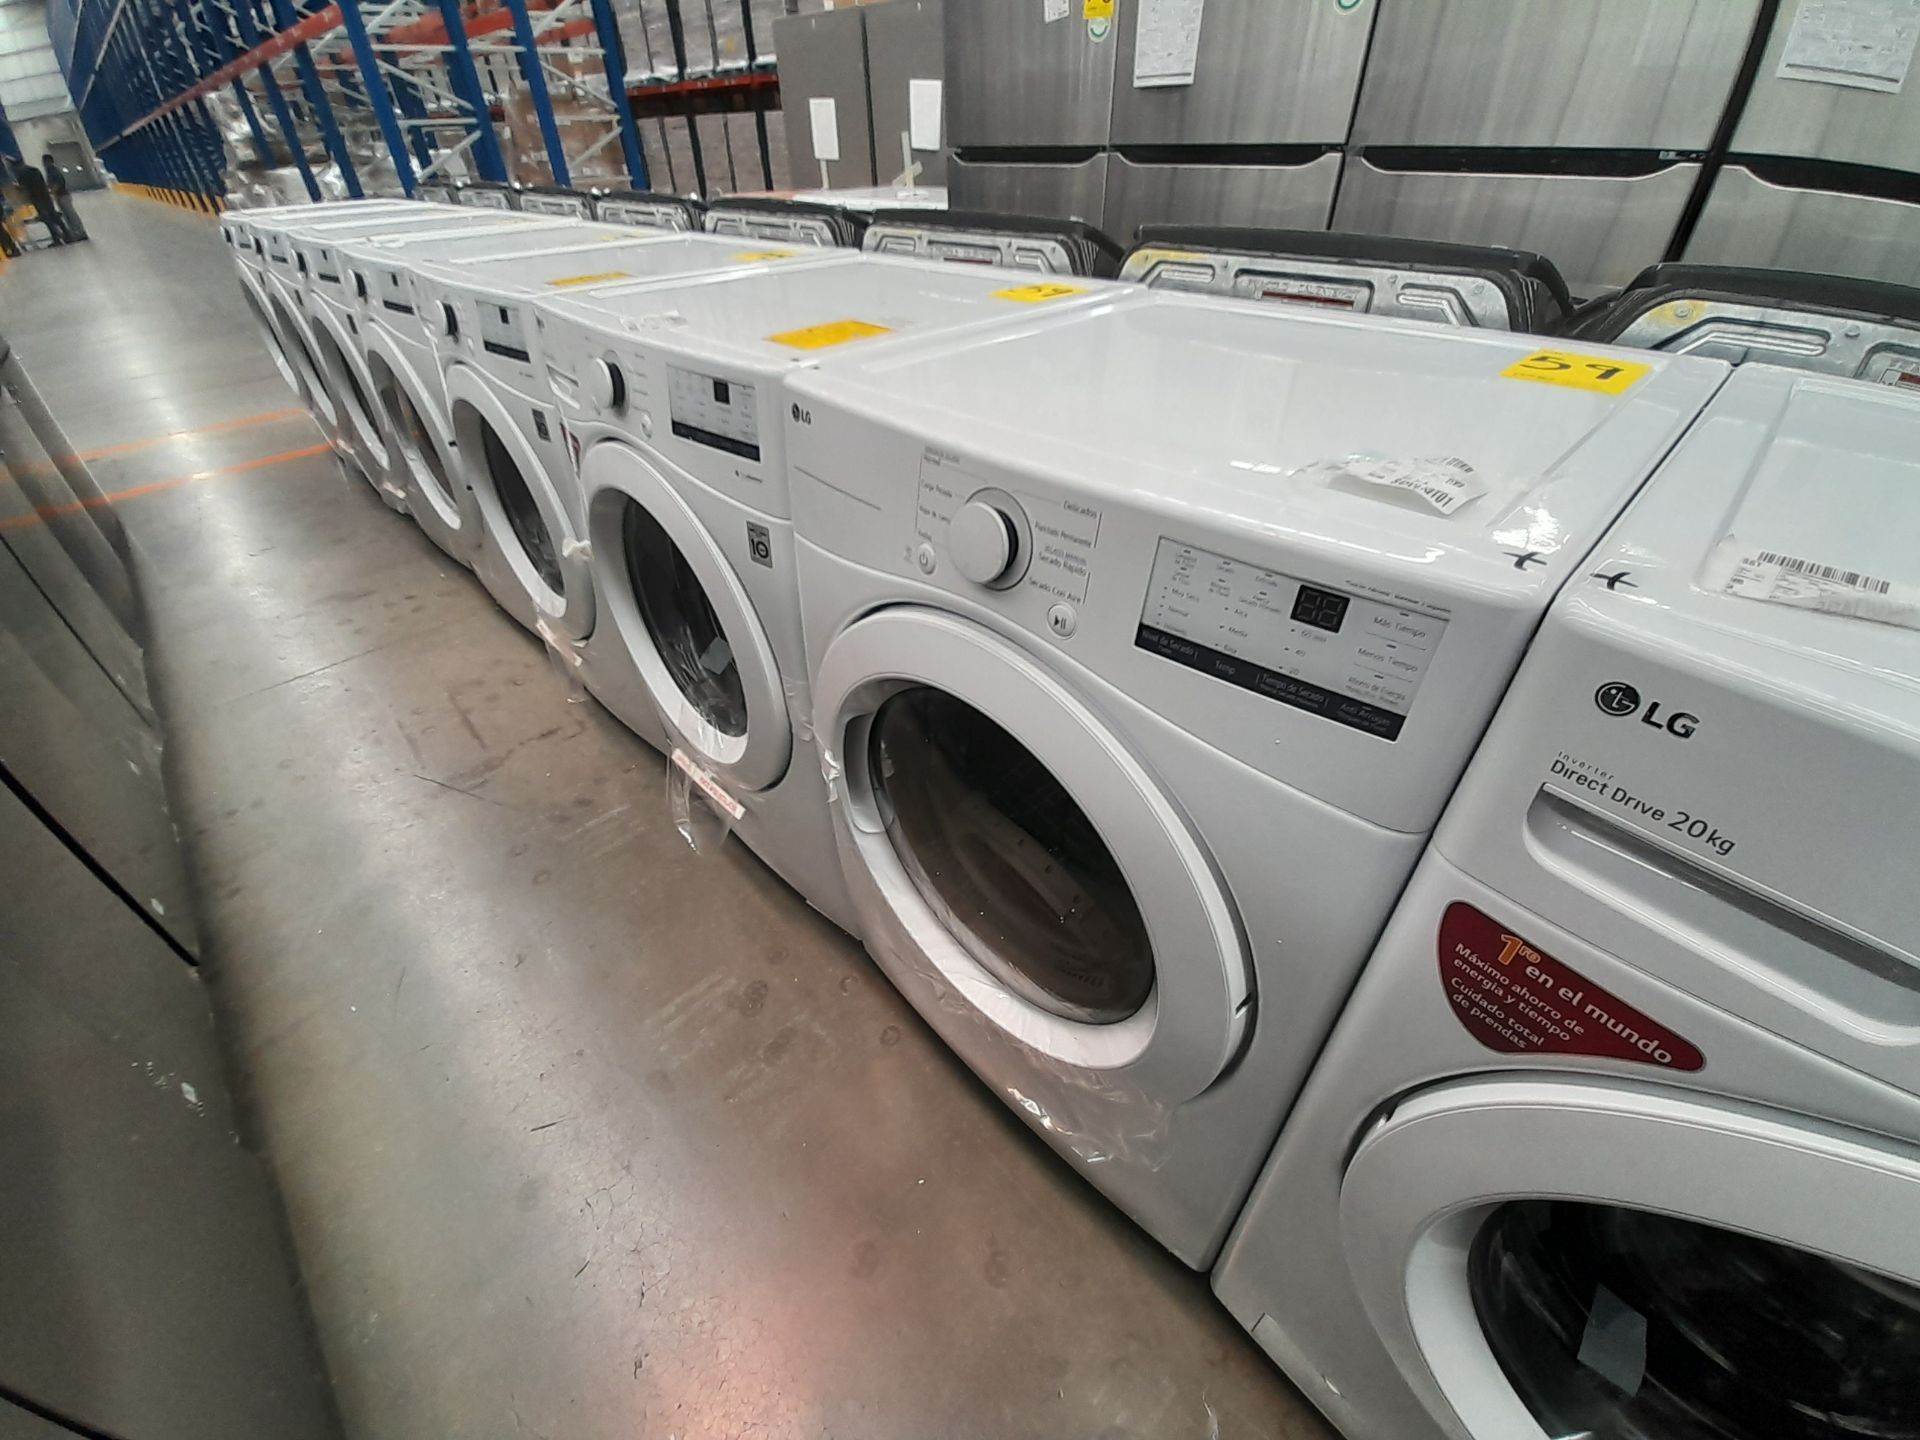 (Nuevo) Lote de 1 lavadora y 1 secadora contiene: 1 lavadora de 20 KG, Marca LG, Modelo WN20WV26W, - Bild 2 aus 6